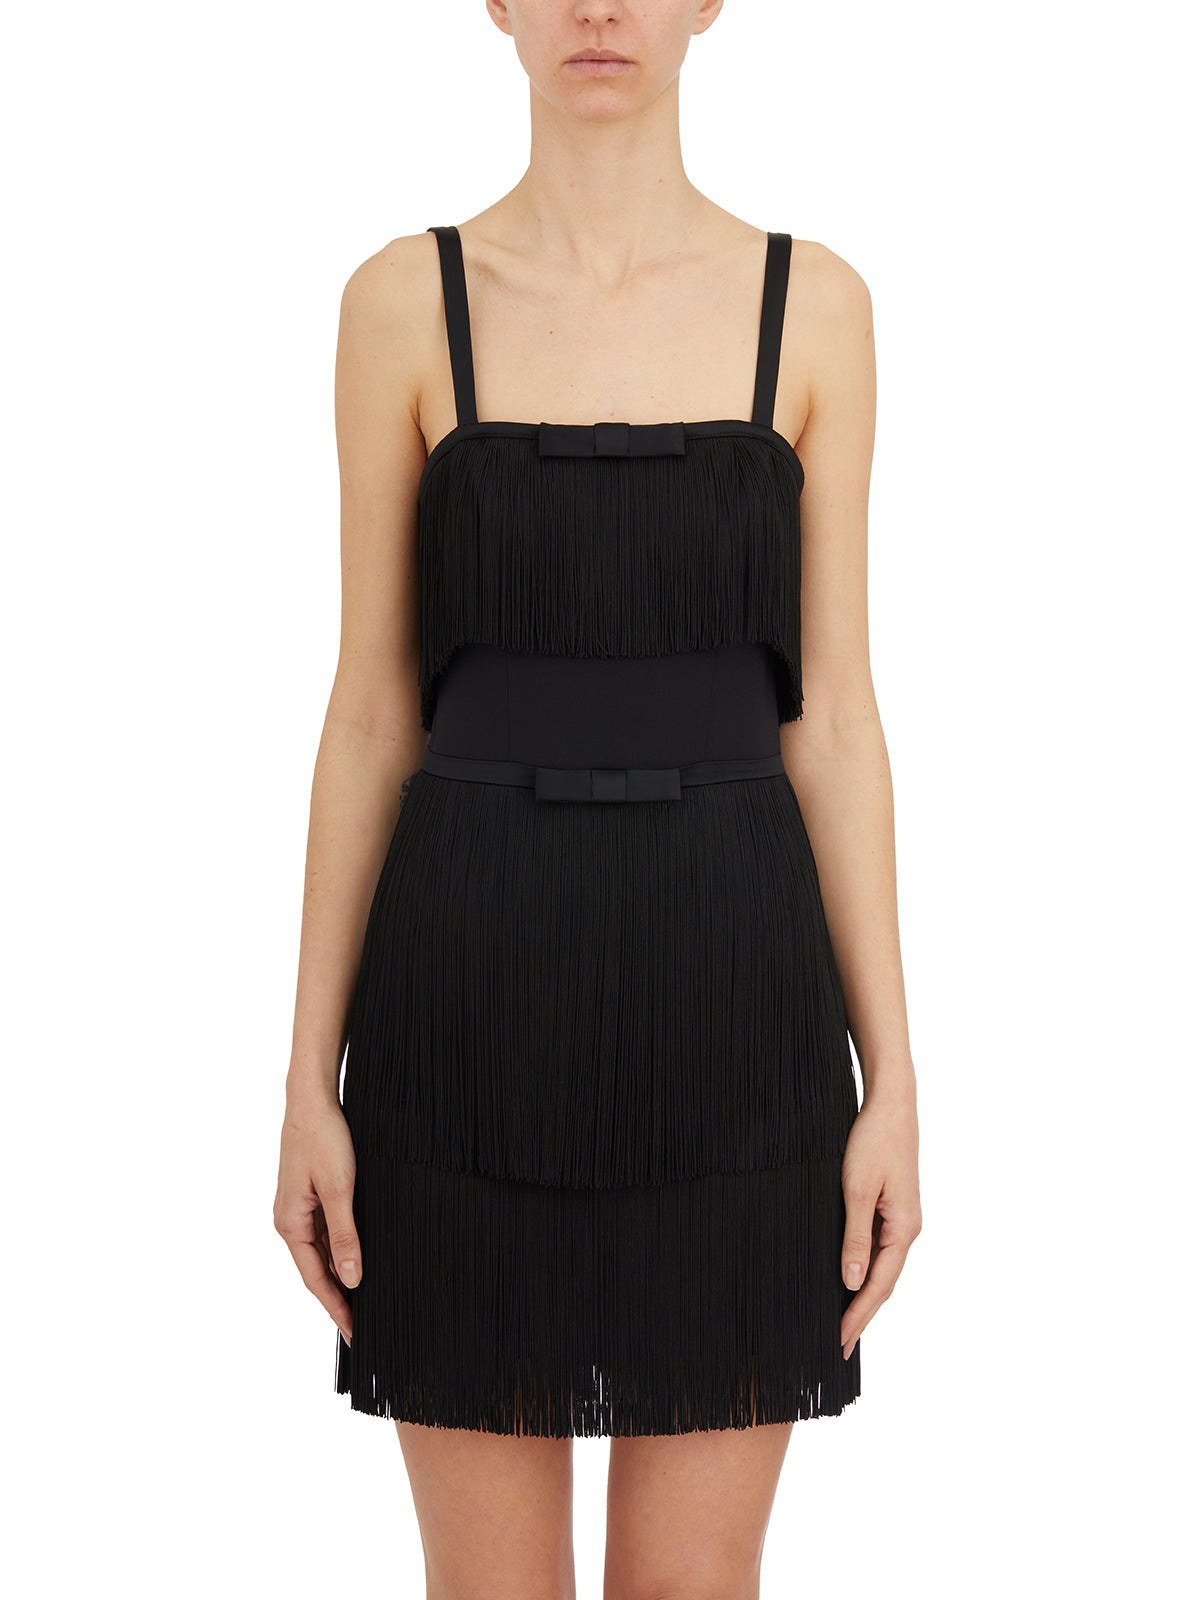 Shop Elisabetta Franchi Stylish Black Suit Short For Women